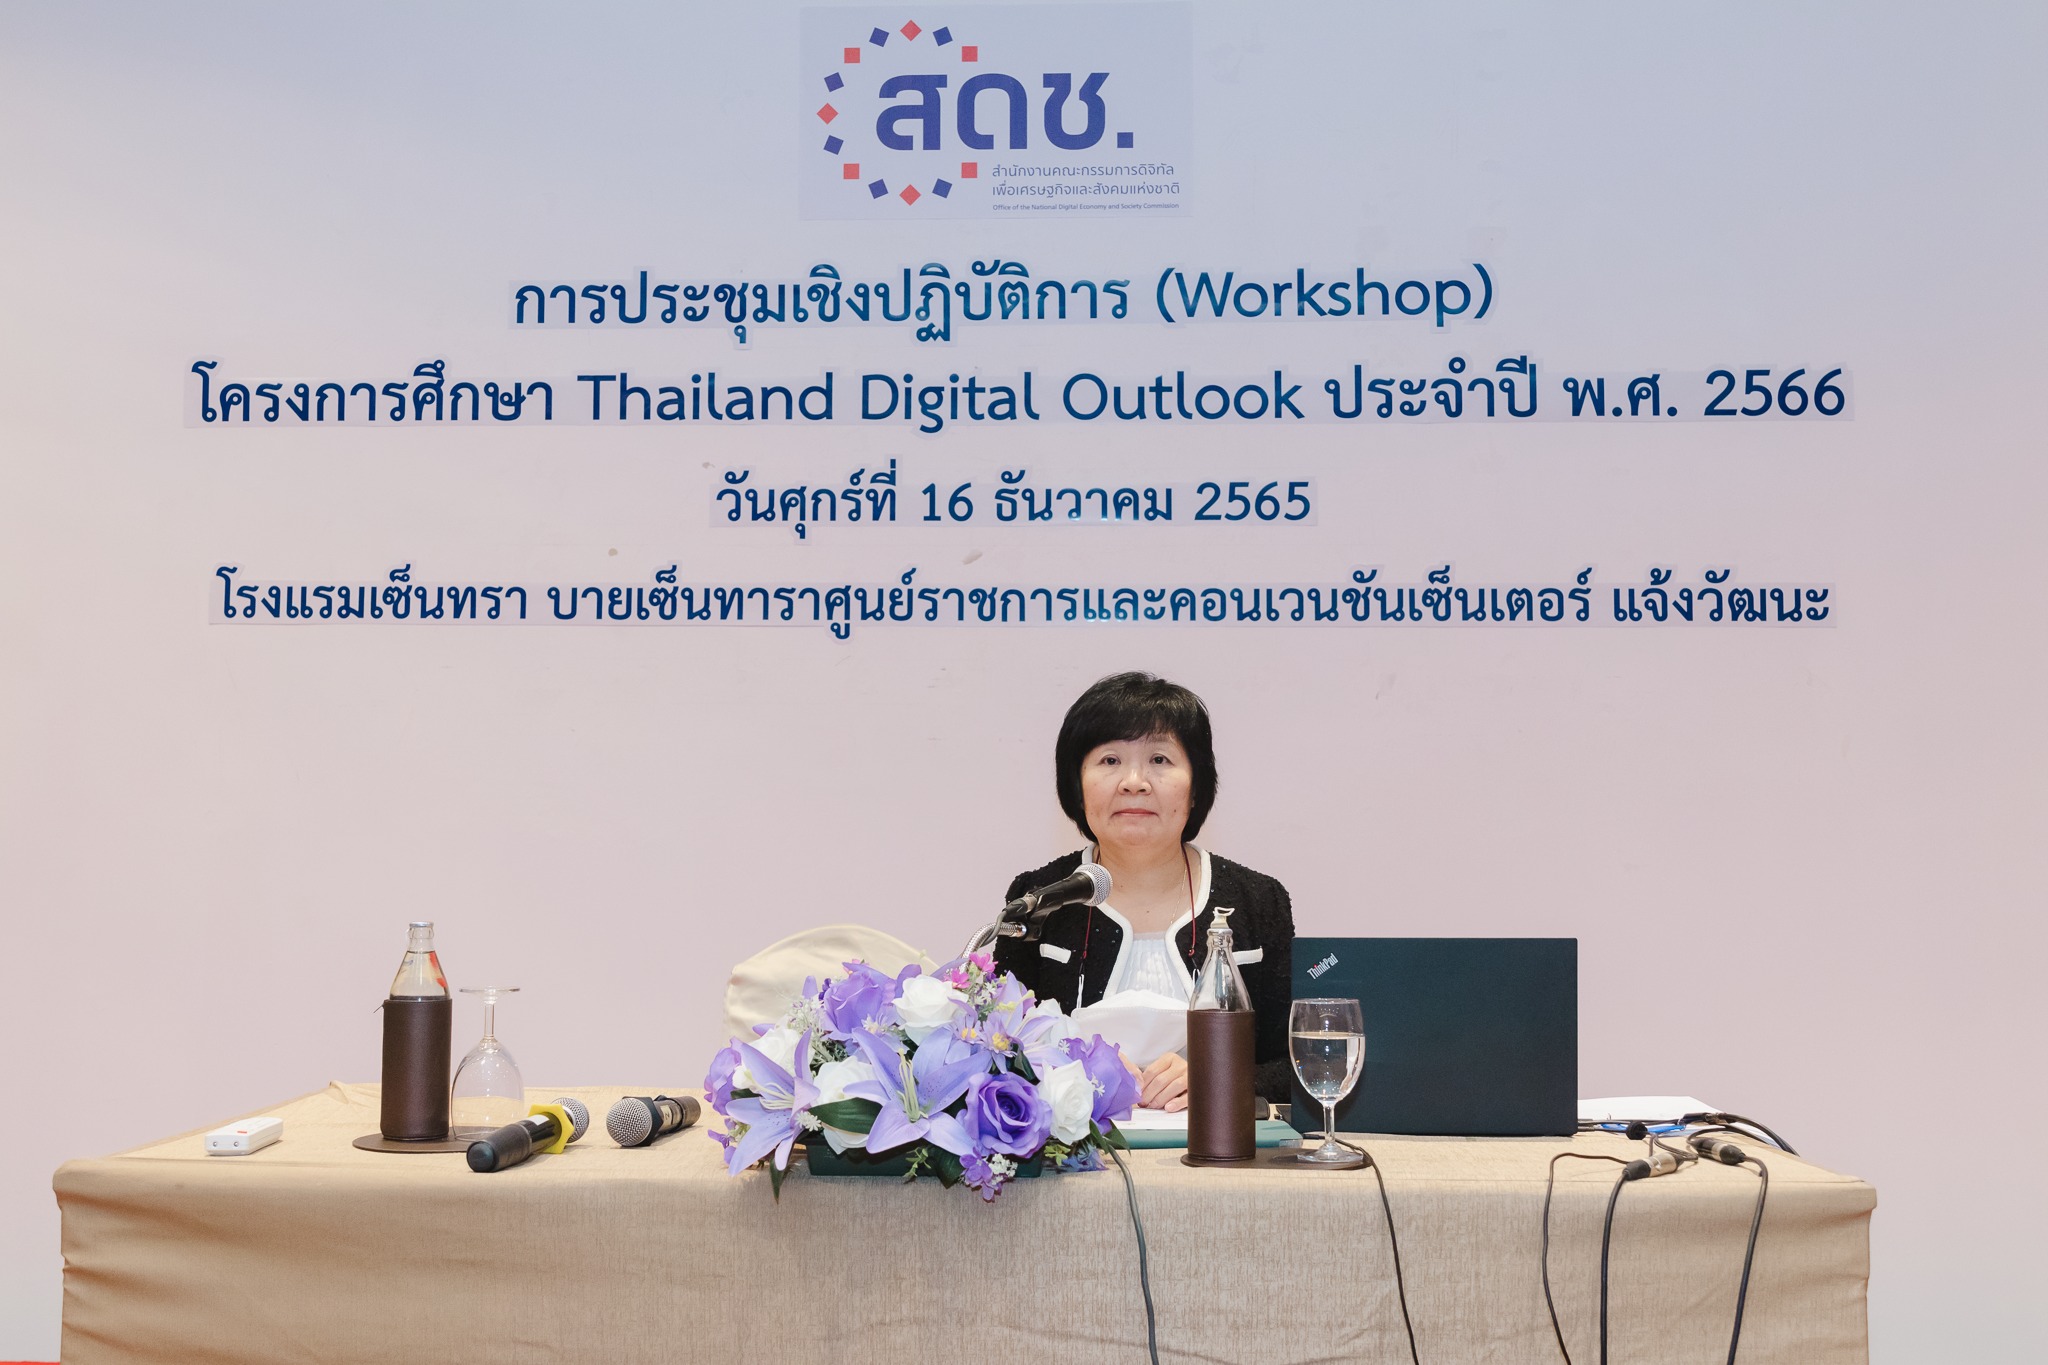 ประชุมปฏิบัติการโครงการศึกษา Thailand Digital Outlook ประจำปี พ.ศ. 2566